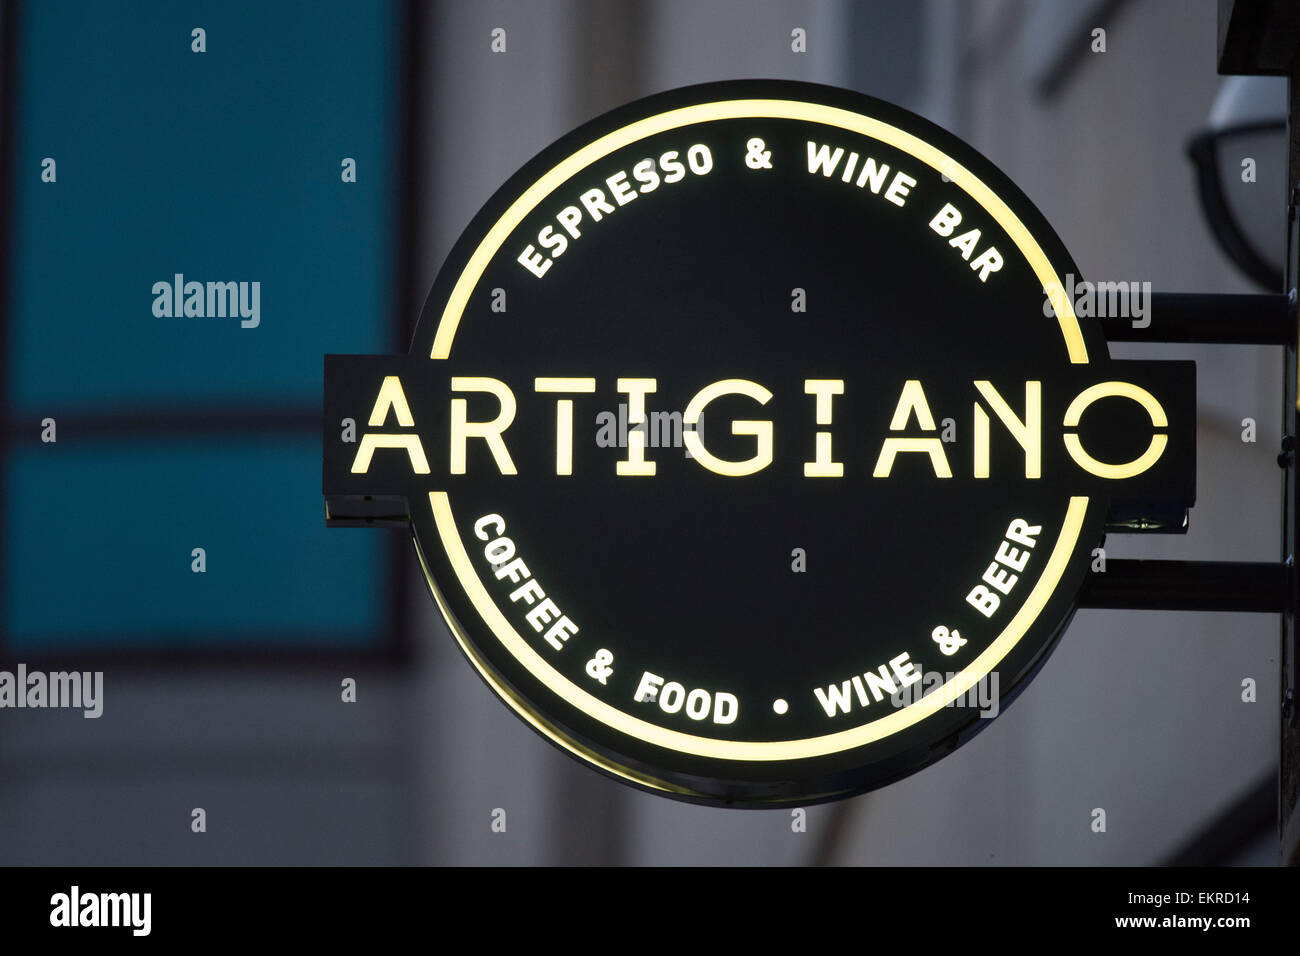 Artigiano espresso y bar de vinos. Foto de stock